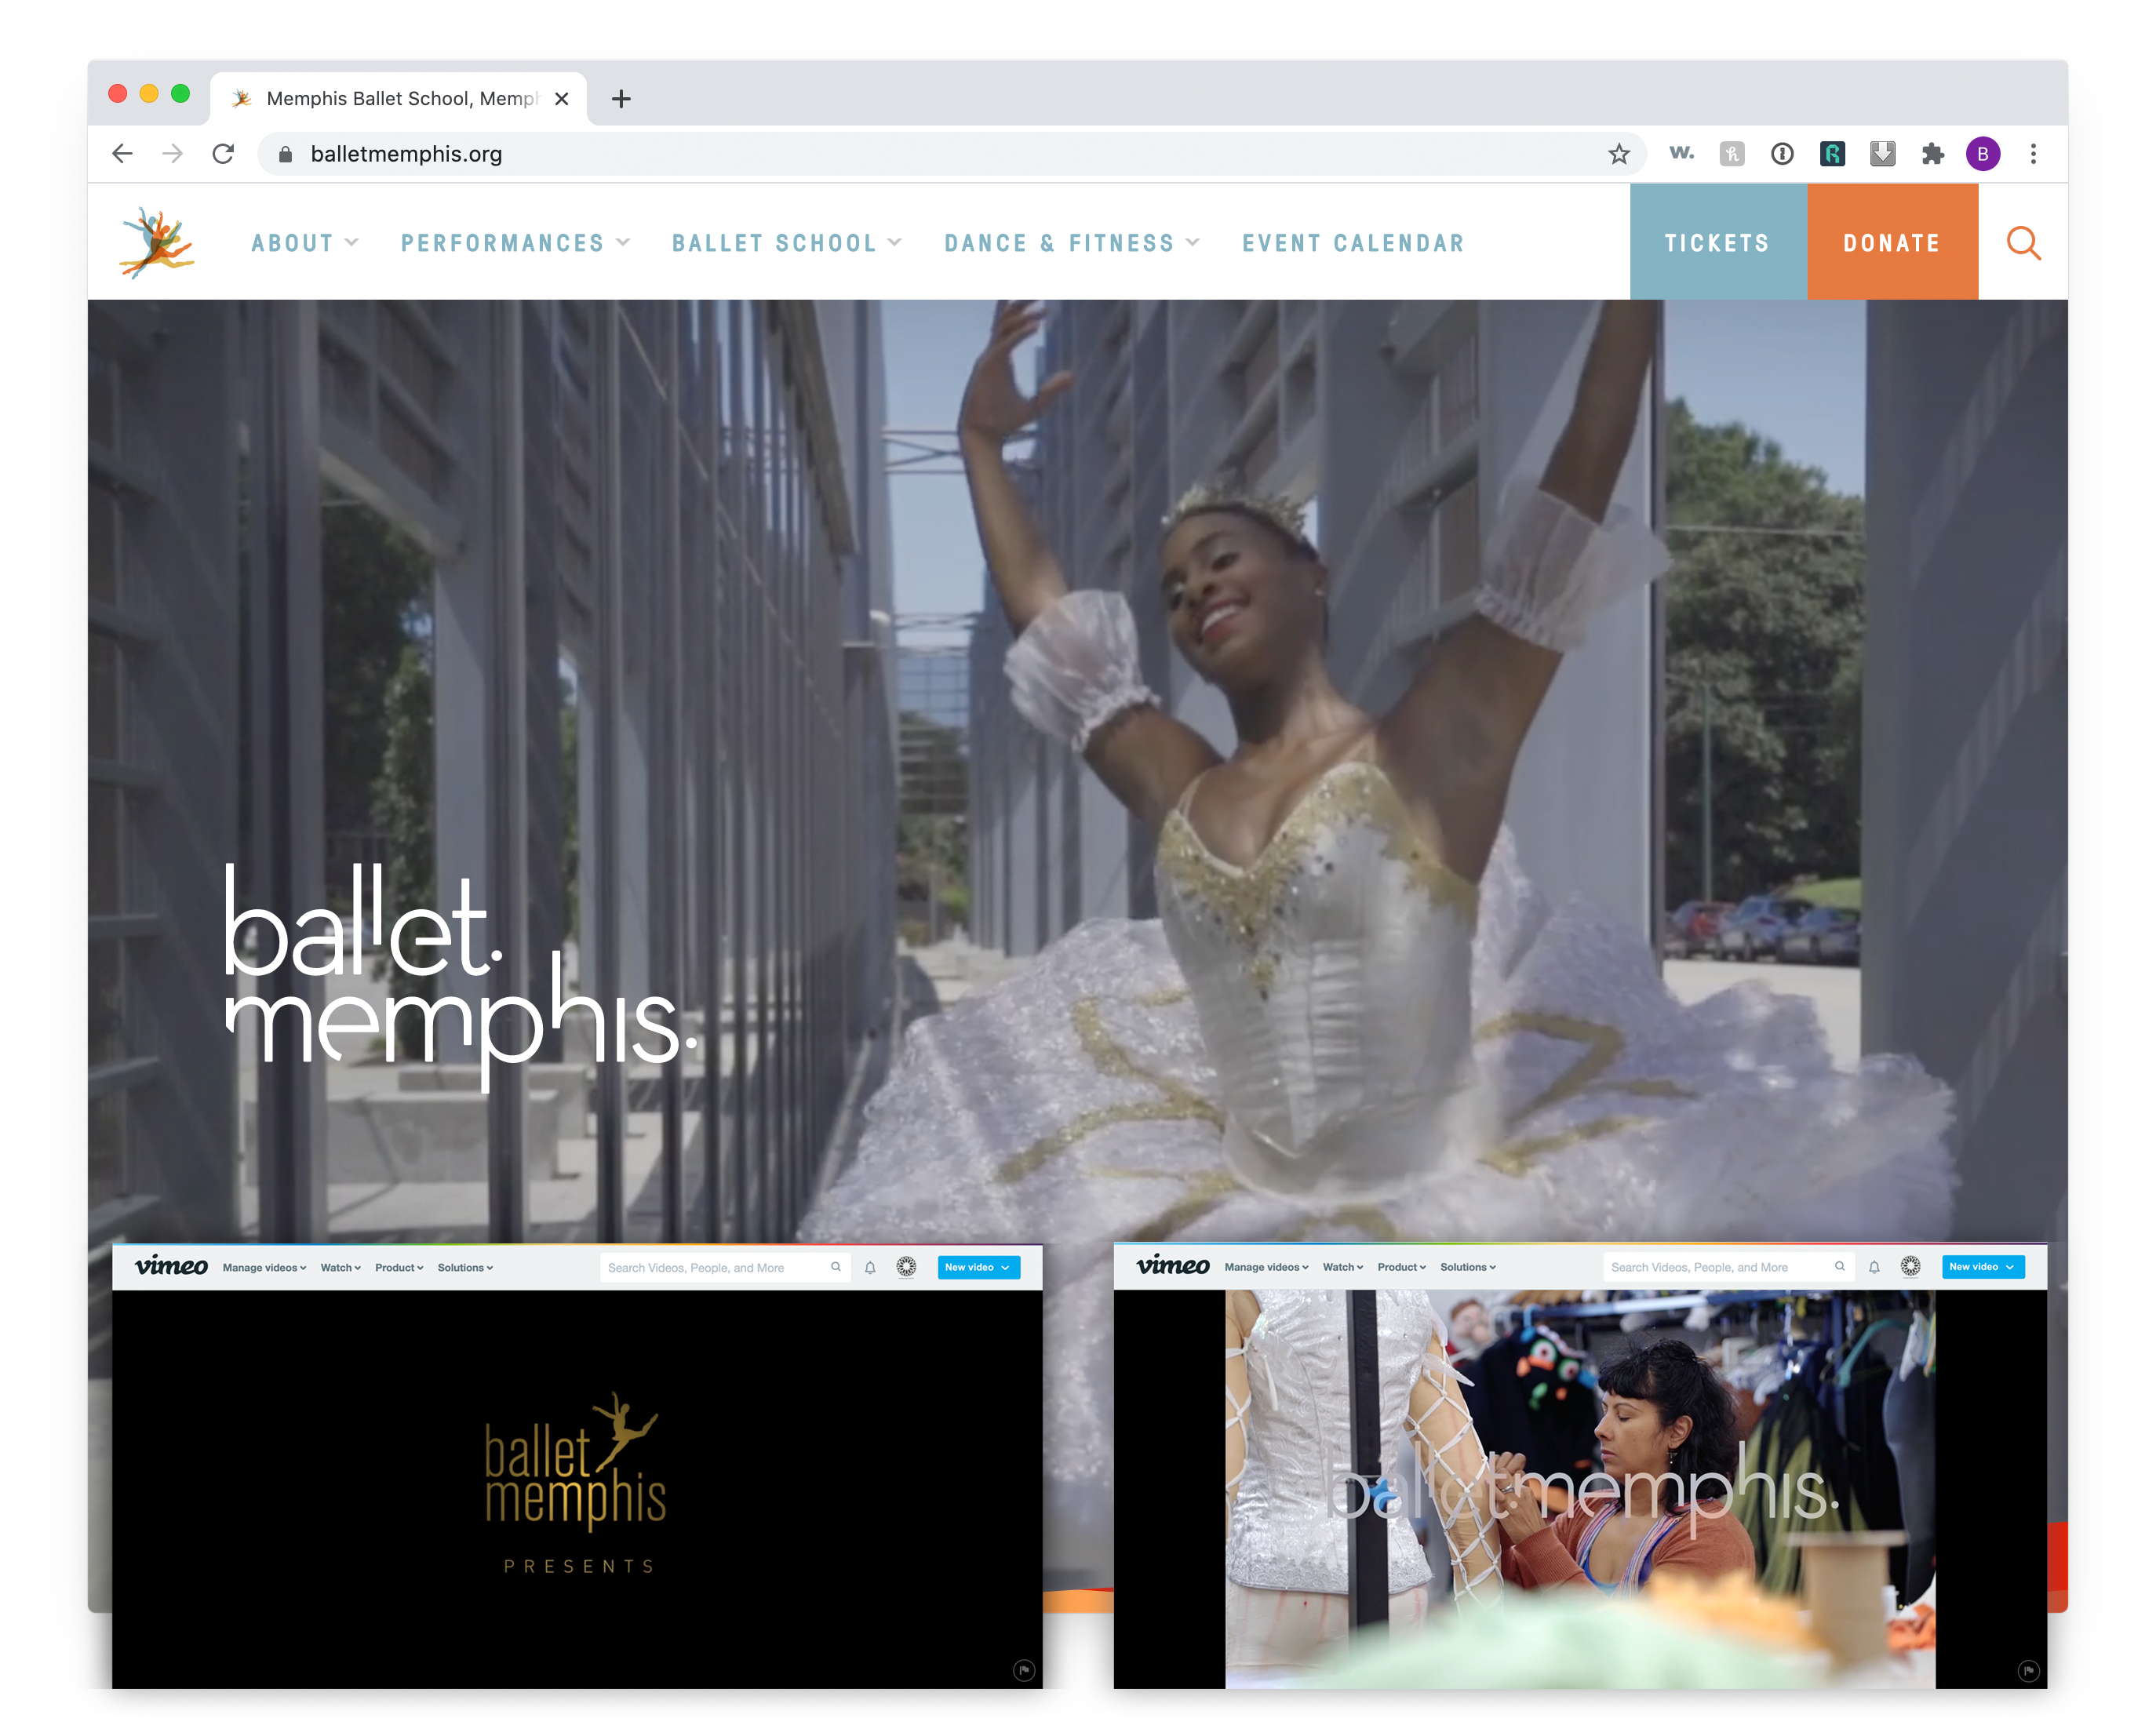 ballet memphis website and videos